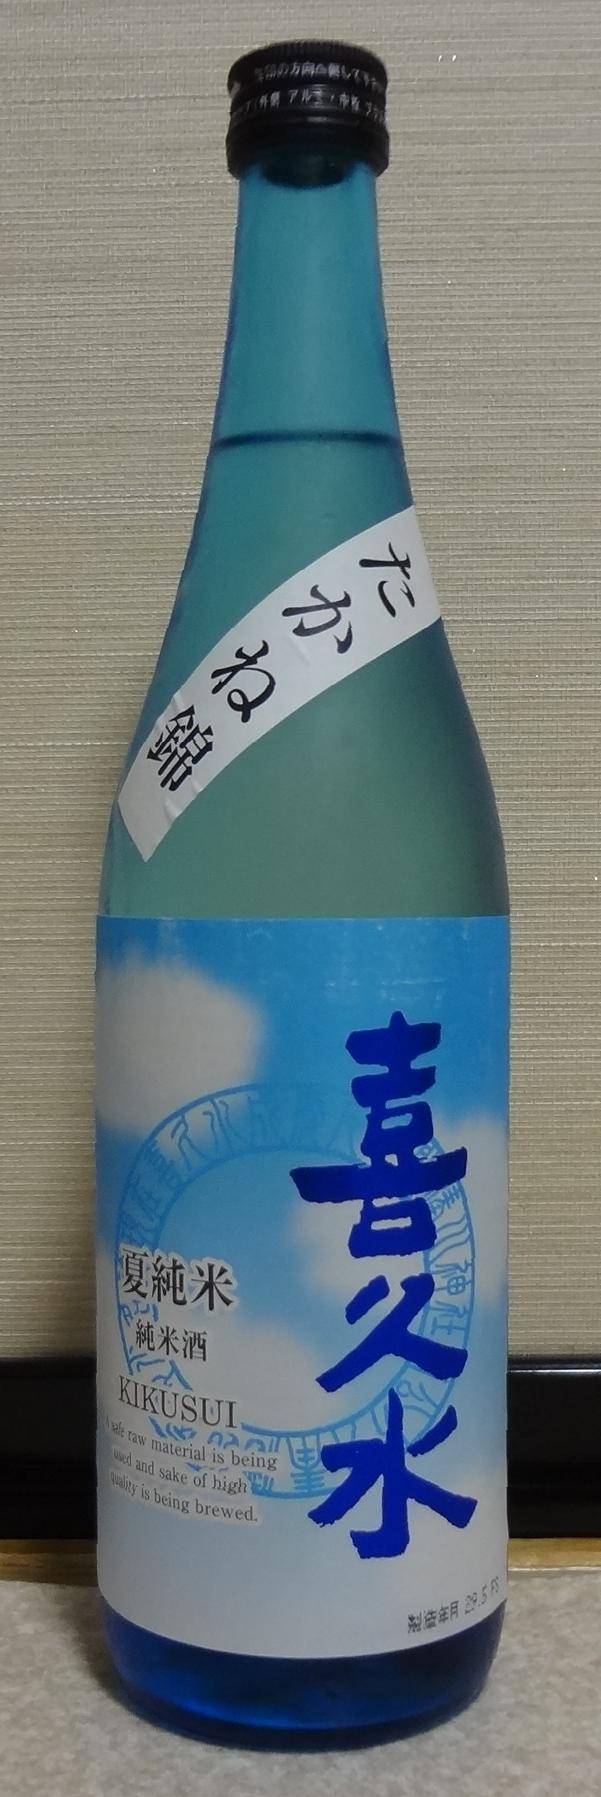 日本酒 喜久水 夏純米 喜久水酒造 長野県内外の美味しい いっぽん 日本酒 記録帳